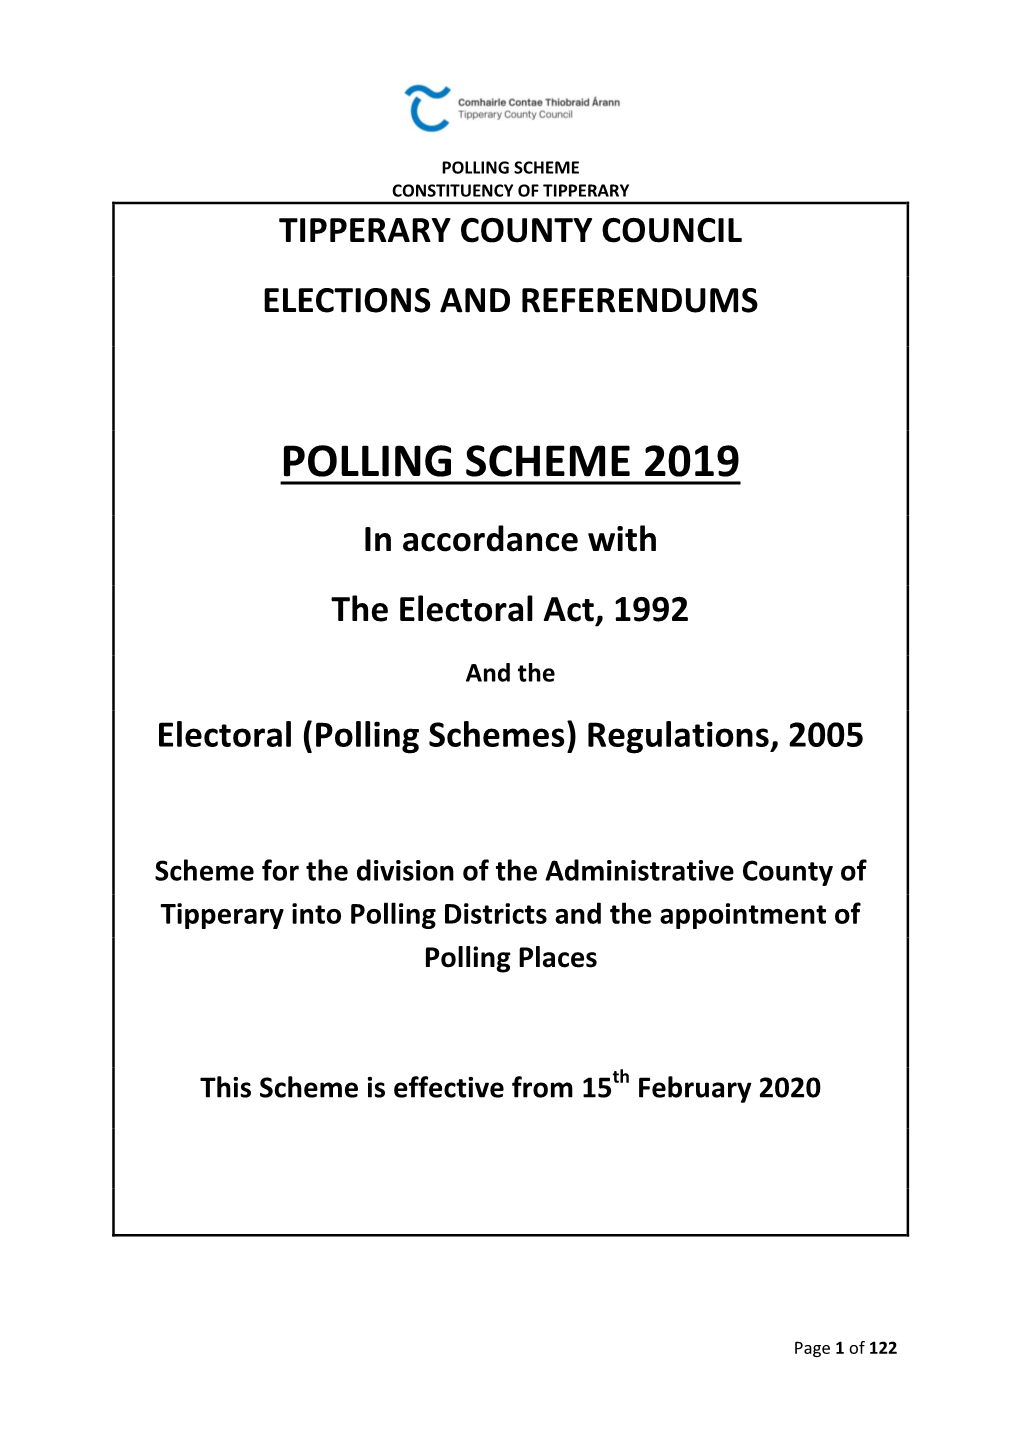 TCC Polling Scheme 2019